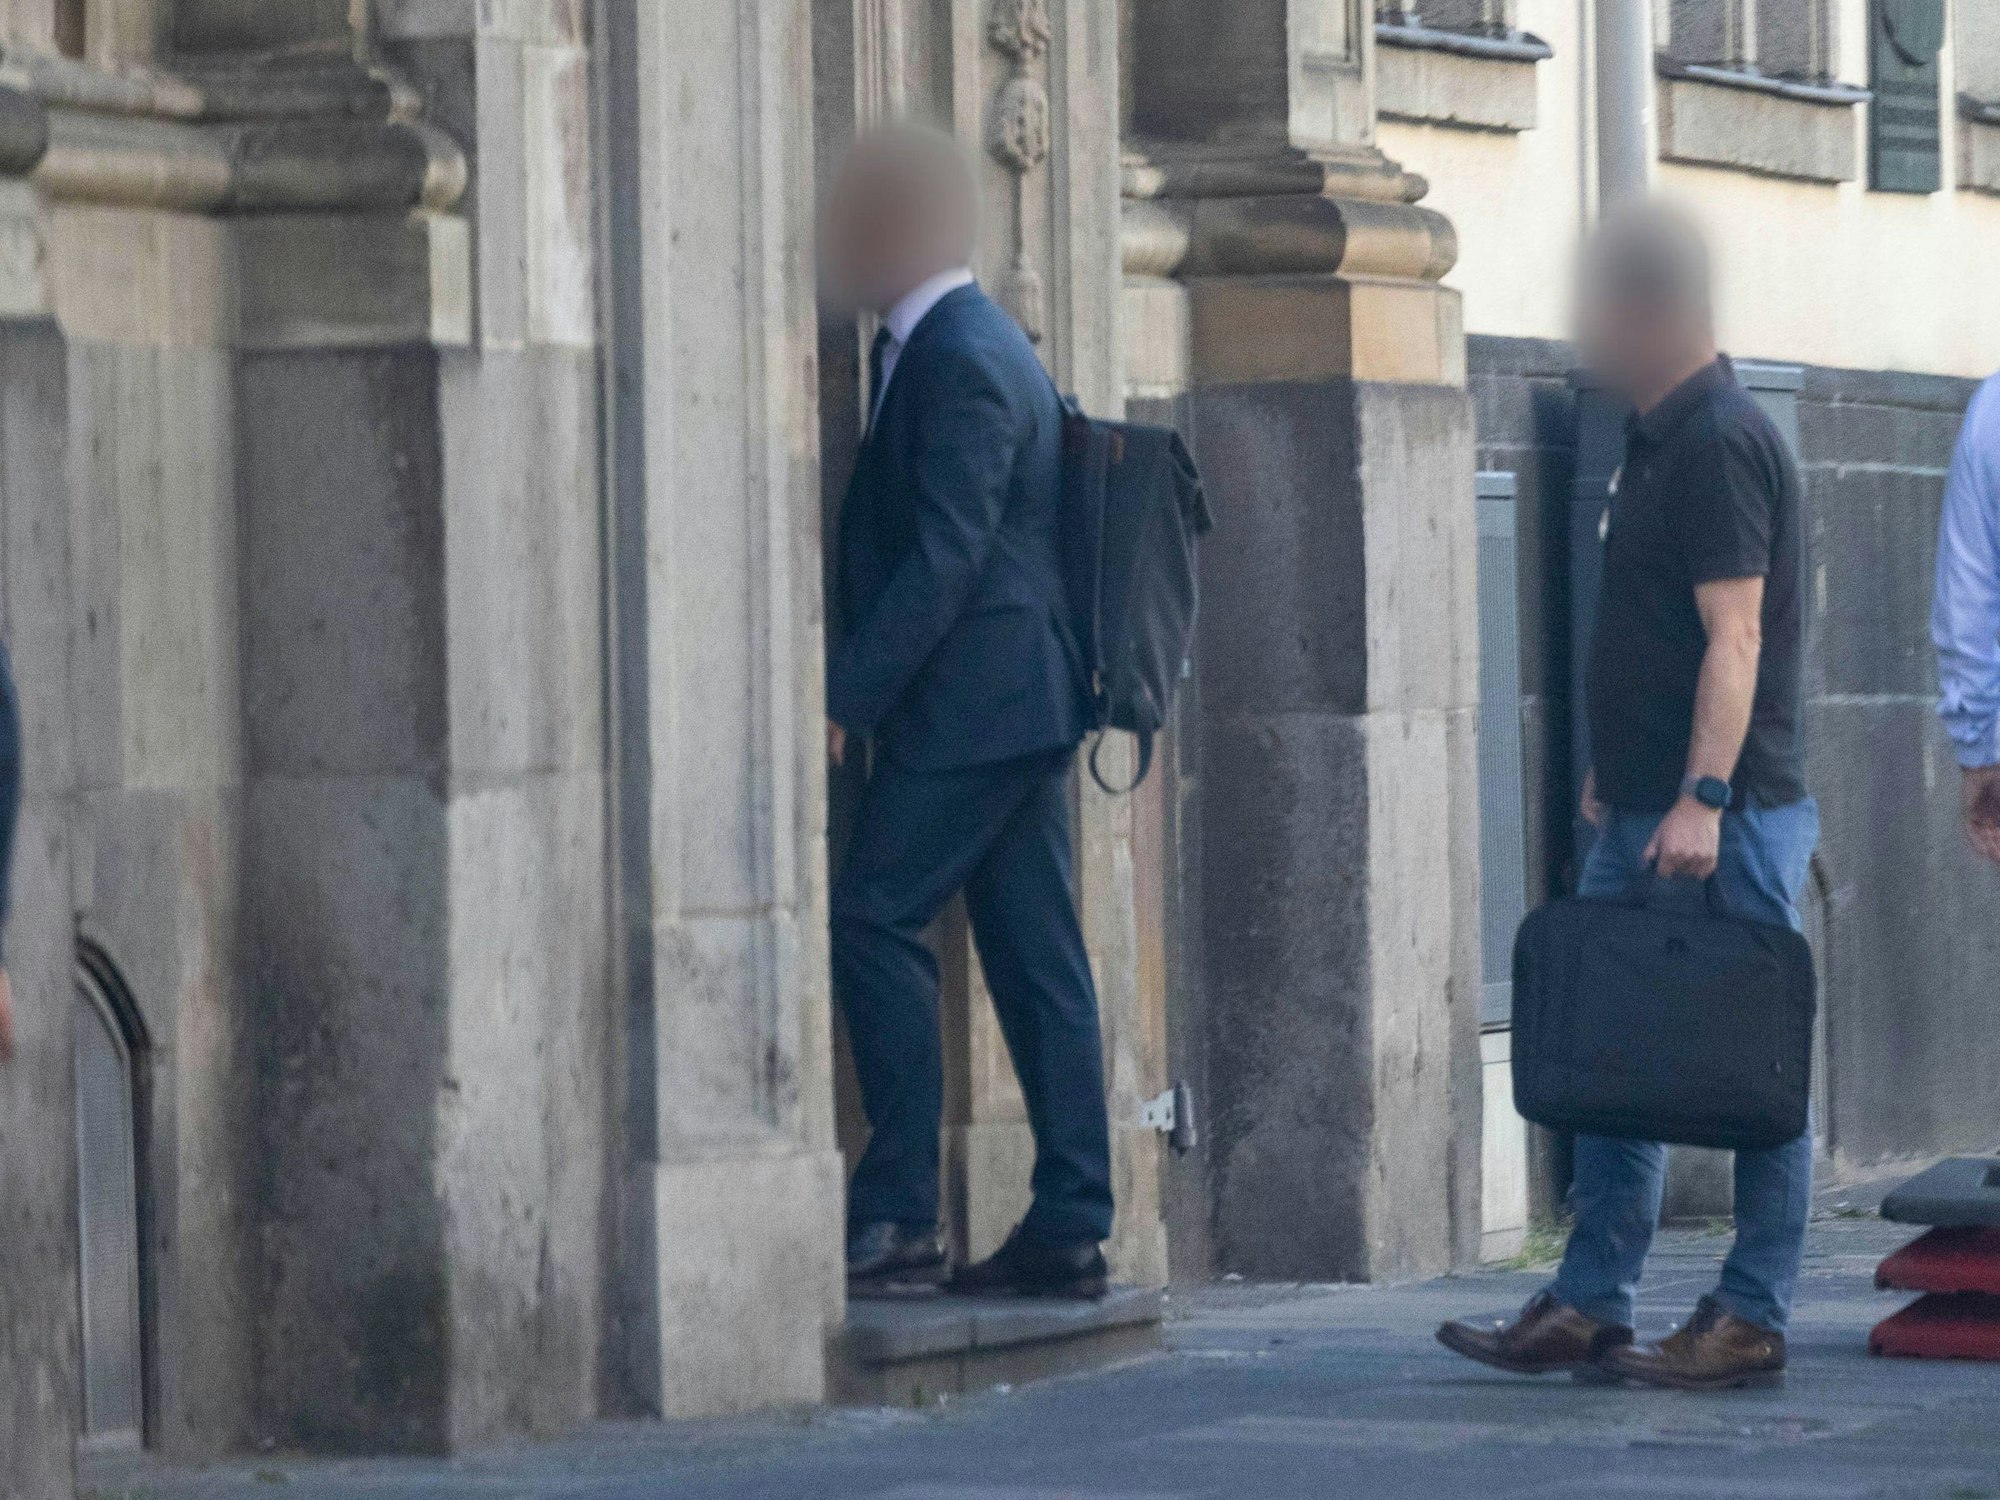 Zivilbeamte gehen in das Erzbischöfliche Generalvikariat in Köln. Die Staatsanwaltschaft und Polizei in Köln durchsuchten mehrere Objekte im Erzbistum Köln.